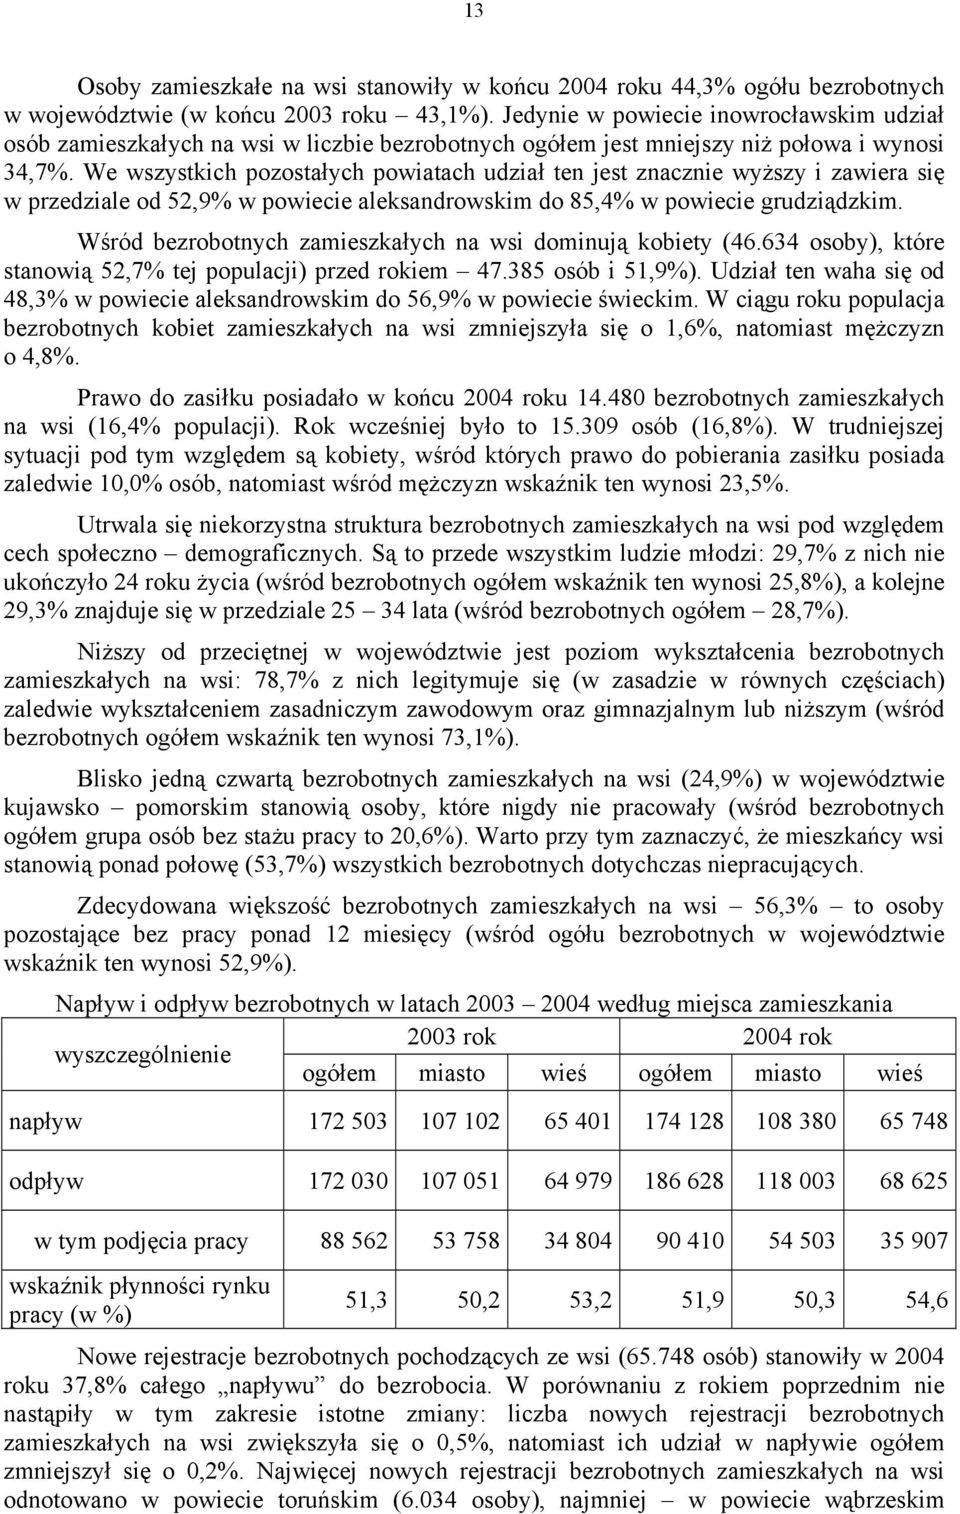 We wszystkich pozostałych powiatach udział ten jest znacznie wyższy i zawiera się w przedziale od 52,9% w powiecie aleksandrowskim do 85,4% w powiecie grudziądzkim.